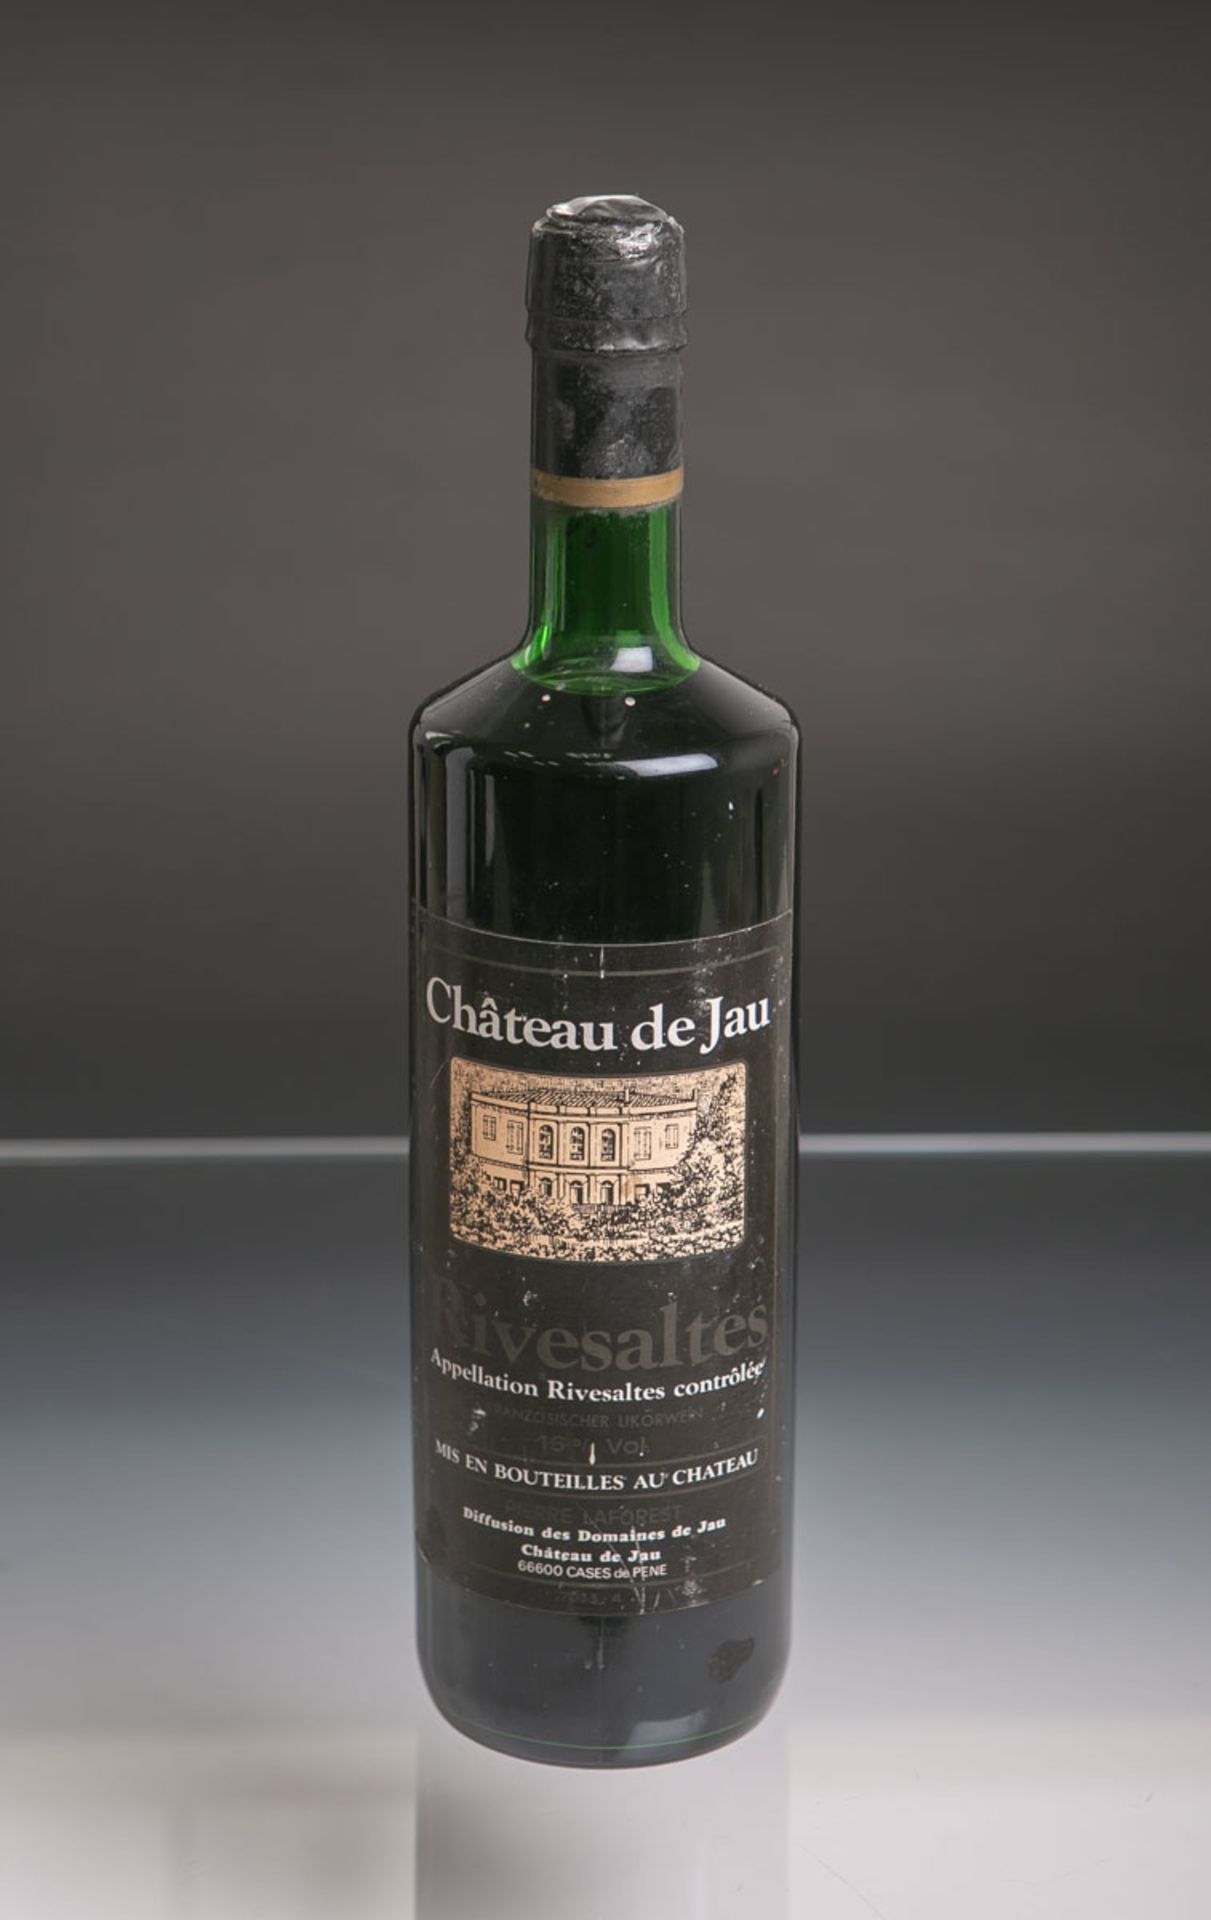 1 Flasche von Chateau de Jau, Rivesaltes, französischer Likörwein, 0,75 L. Altersbed. Zustand.